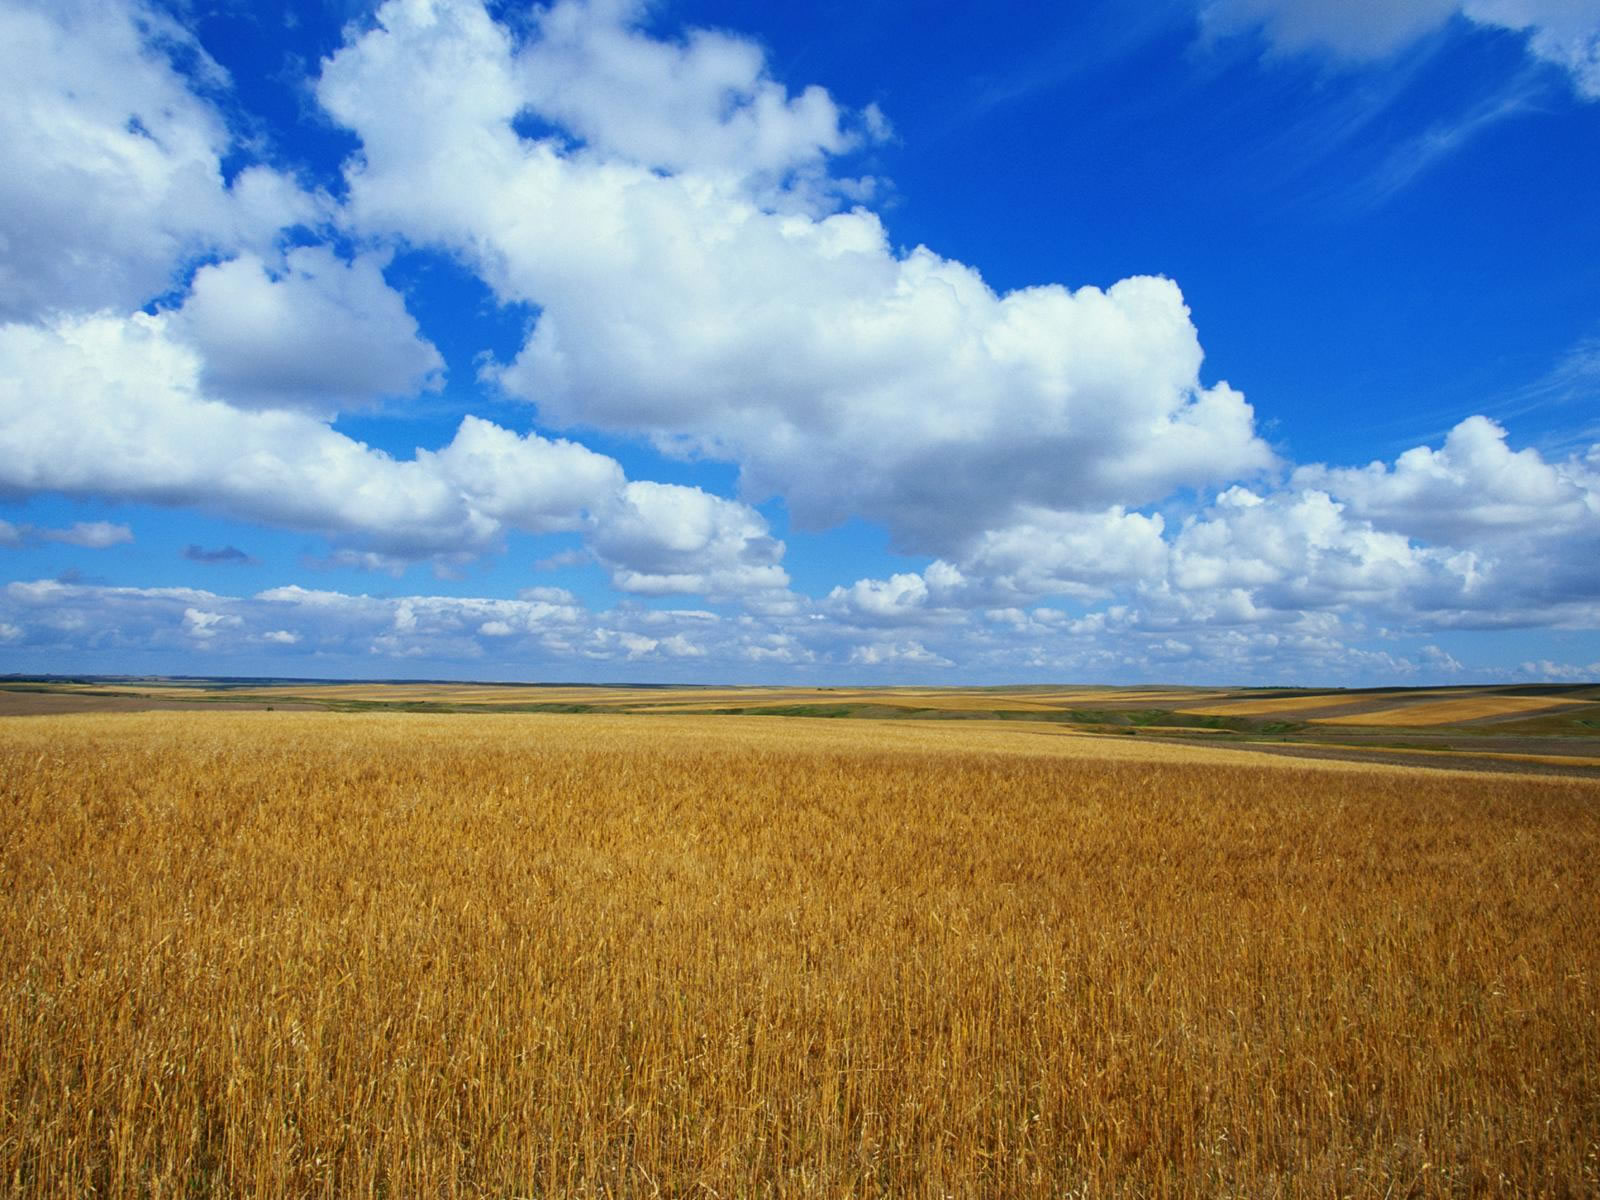 Fond d'ecran Paysage : Plaine et prairie